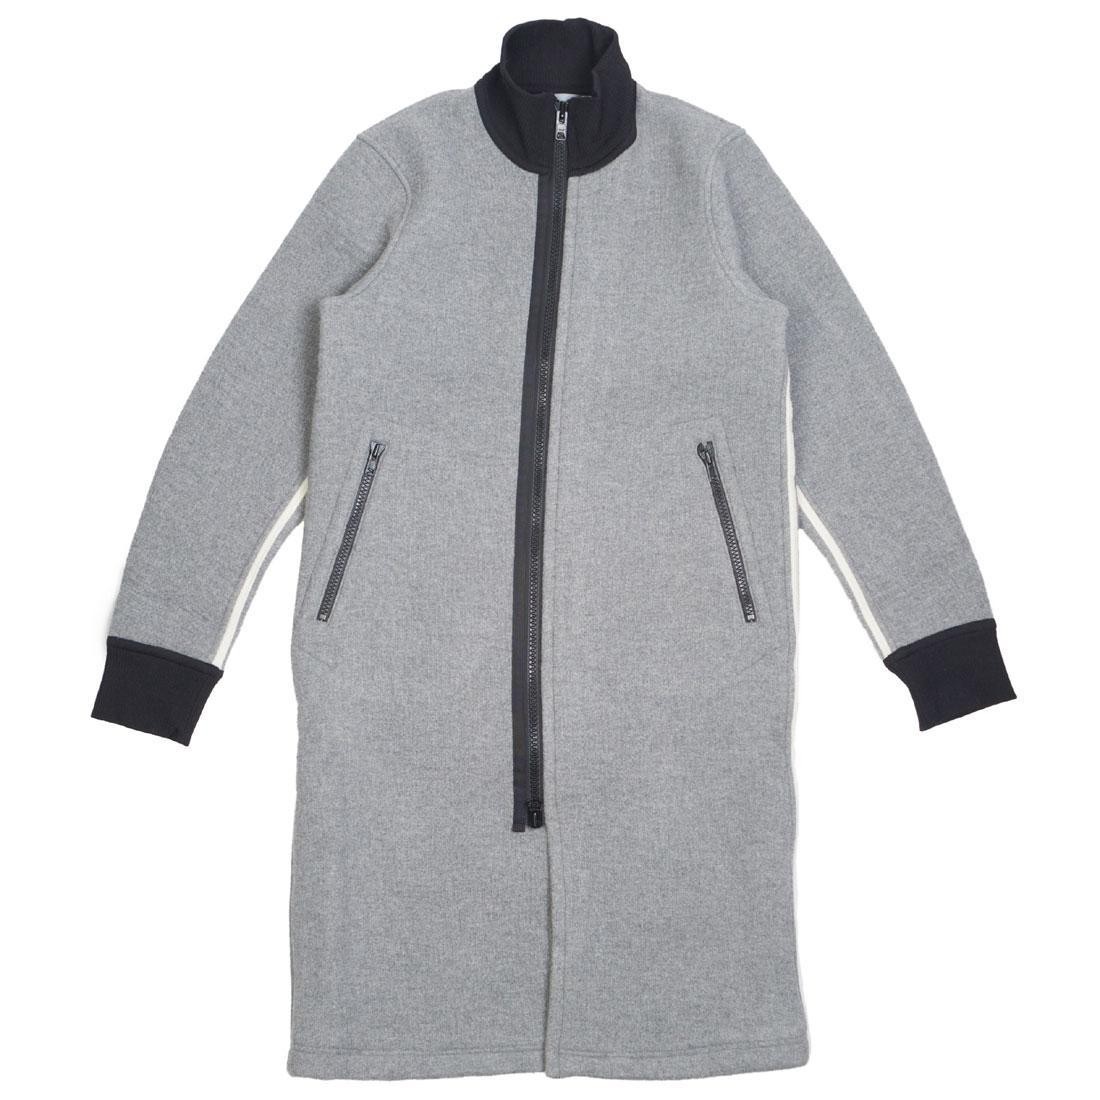 adidas grey jacket mens